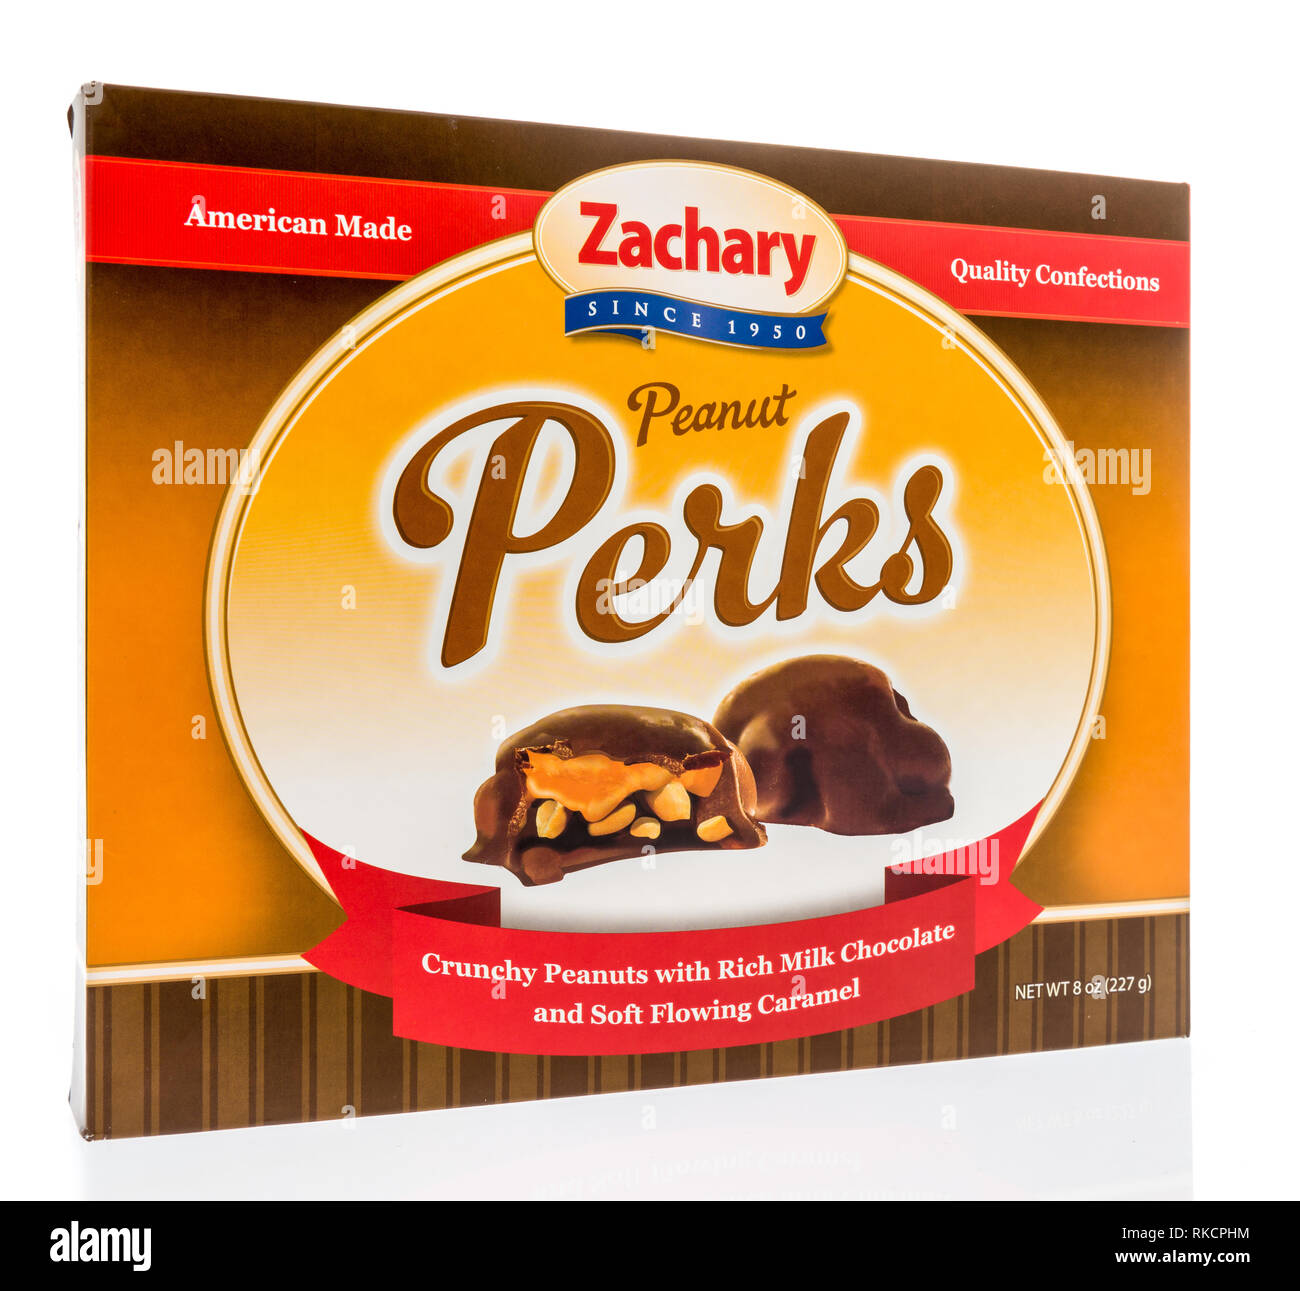 Winneconne, WI - 8 Febbraio 2019: un pacchetto di Zachary peanut perks isolato su un background Foto Stock